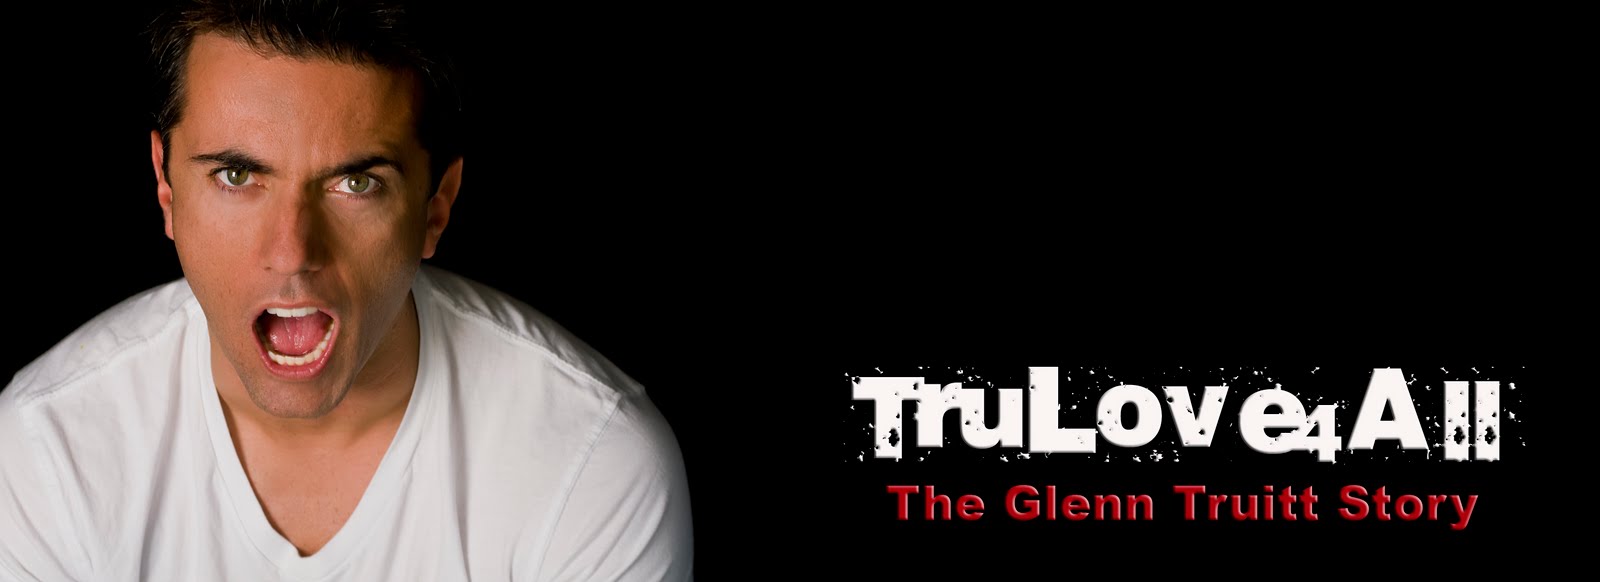 Tru Love 4 All - the Glenn Truitt story